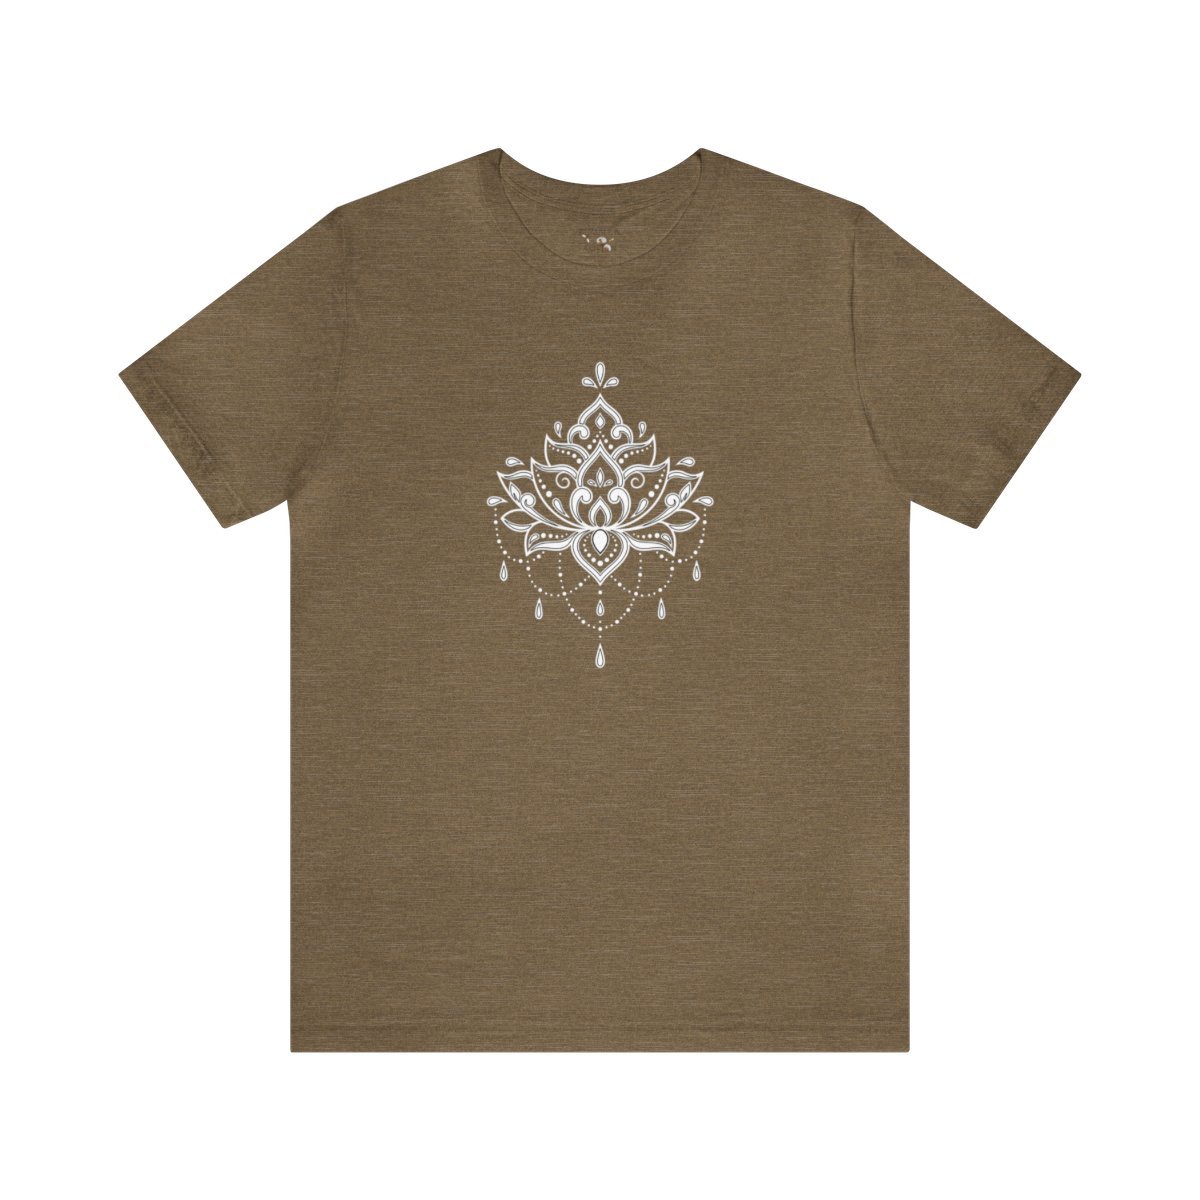 Lotus Tee Shirt || Unisex Fit